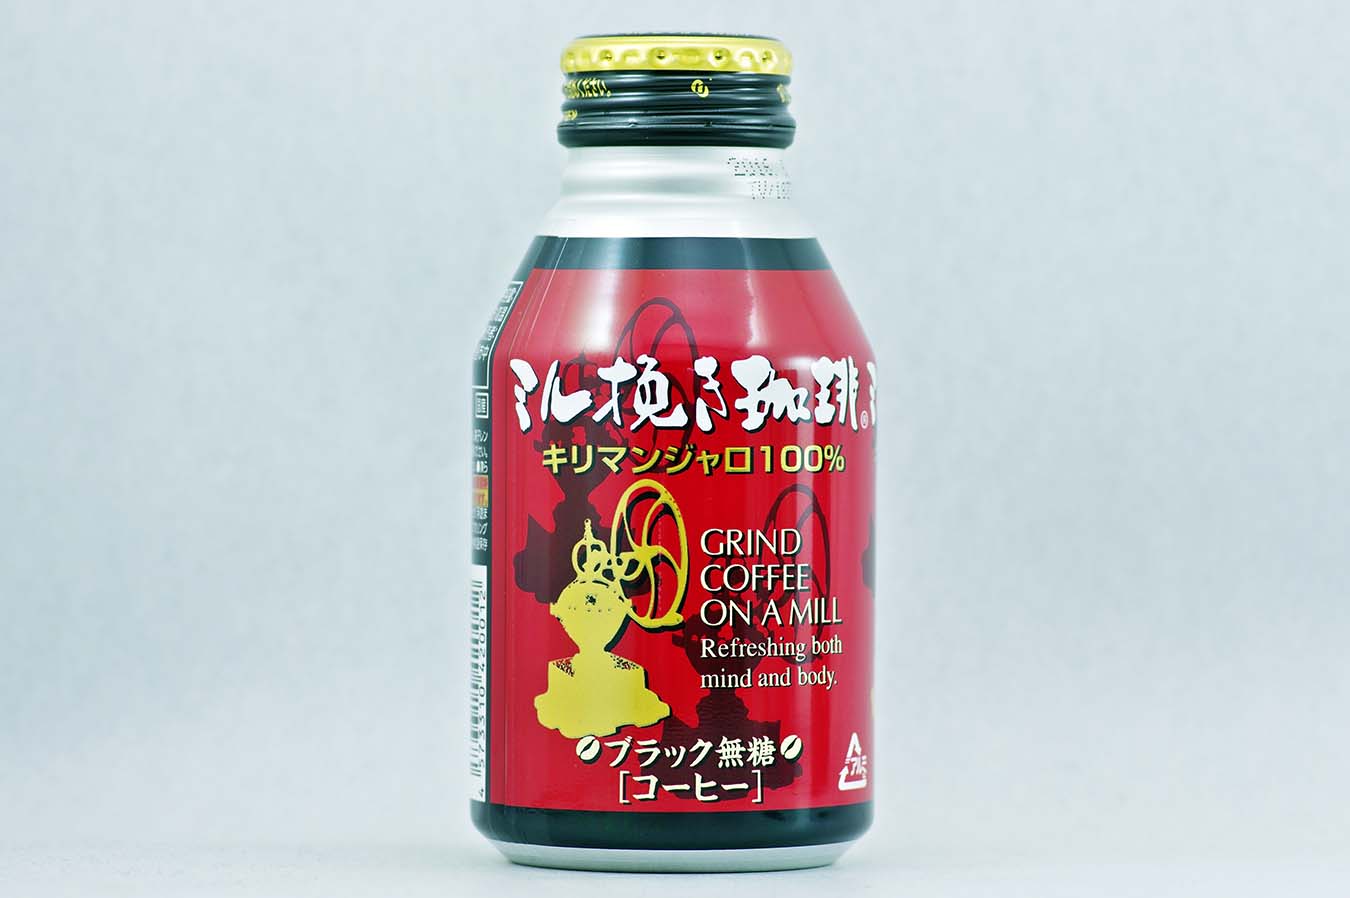 ミル挽き珈琲 275gボトル缶 2015年10月